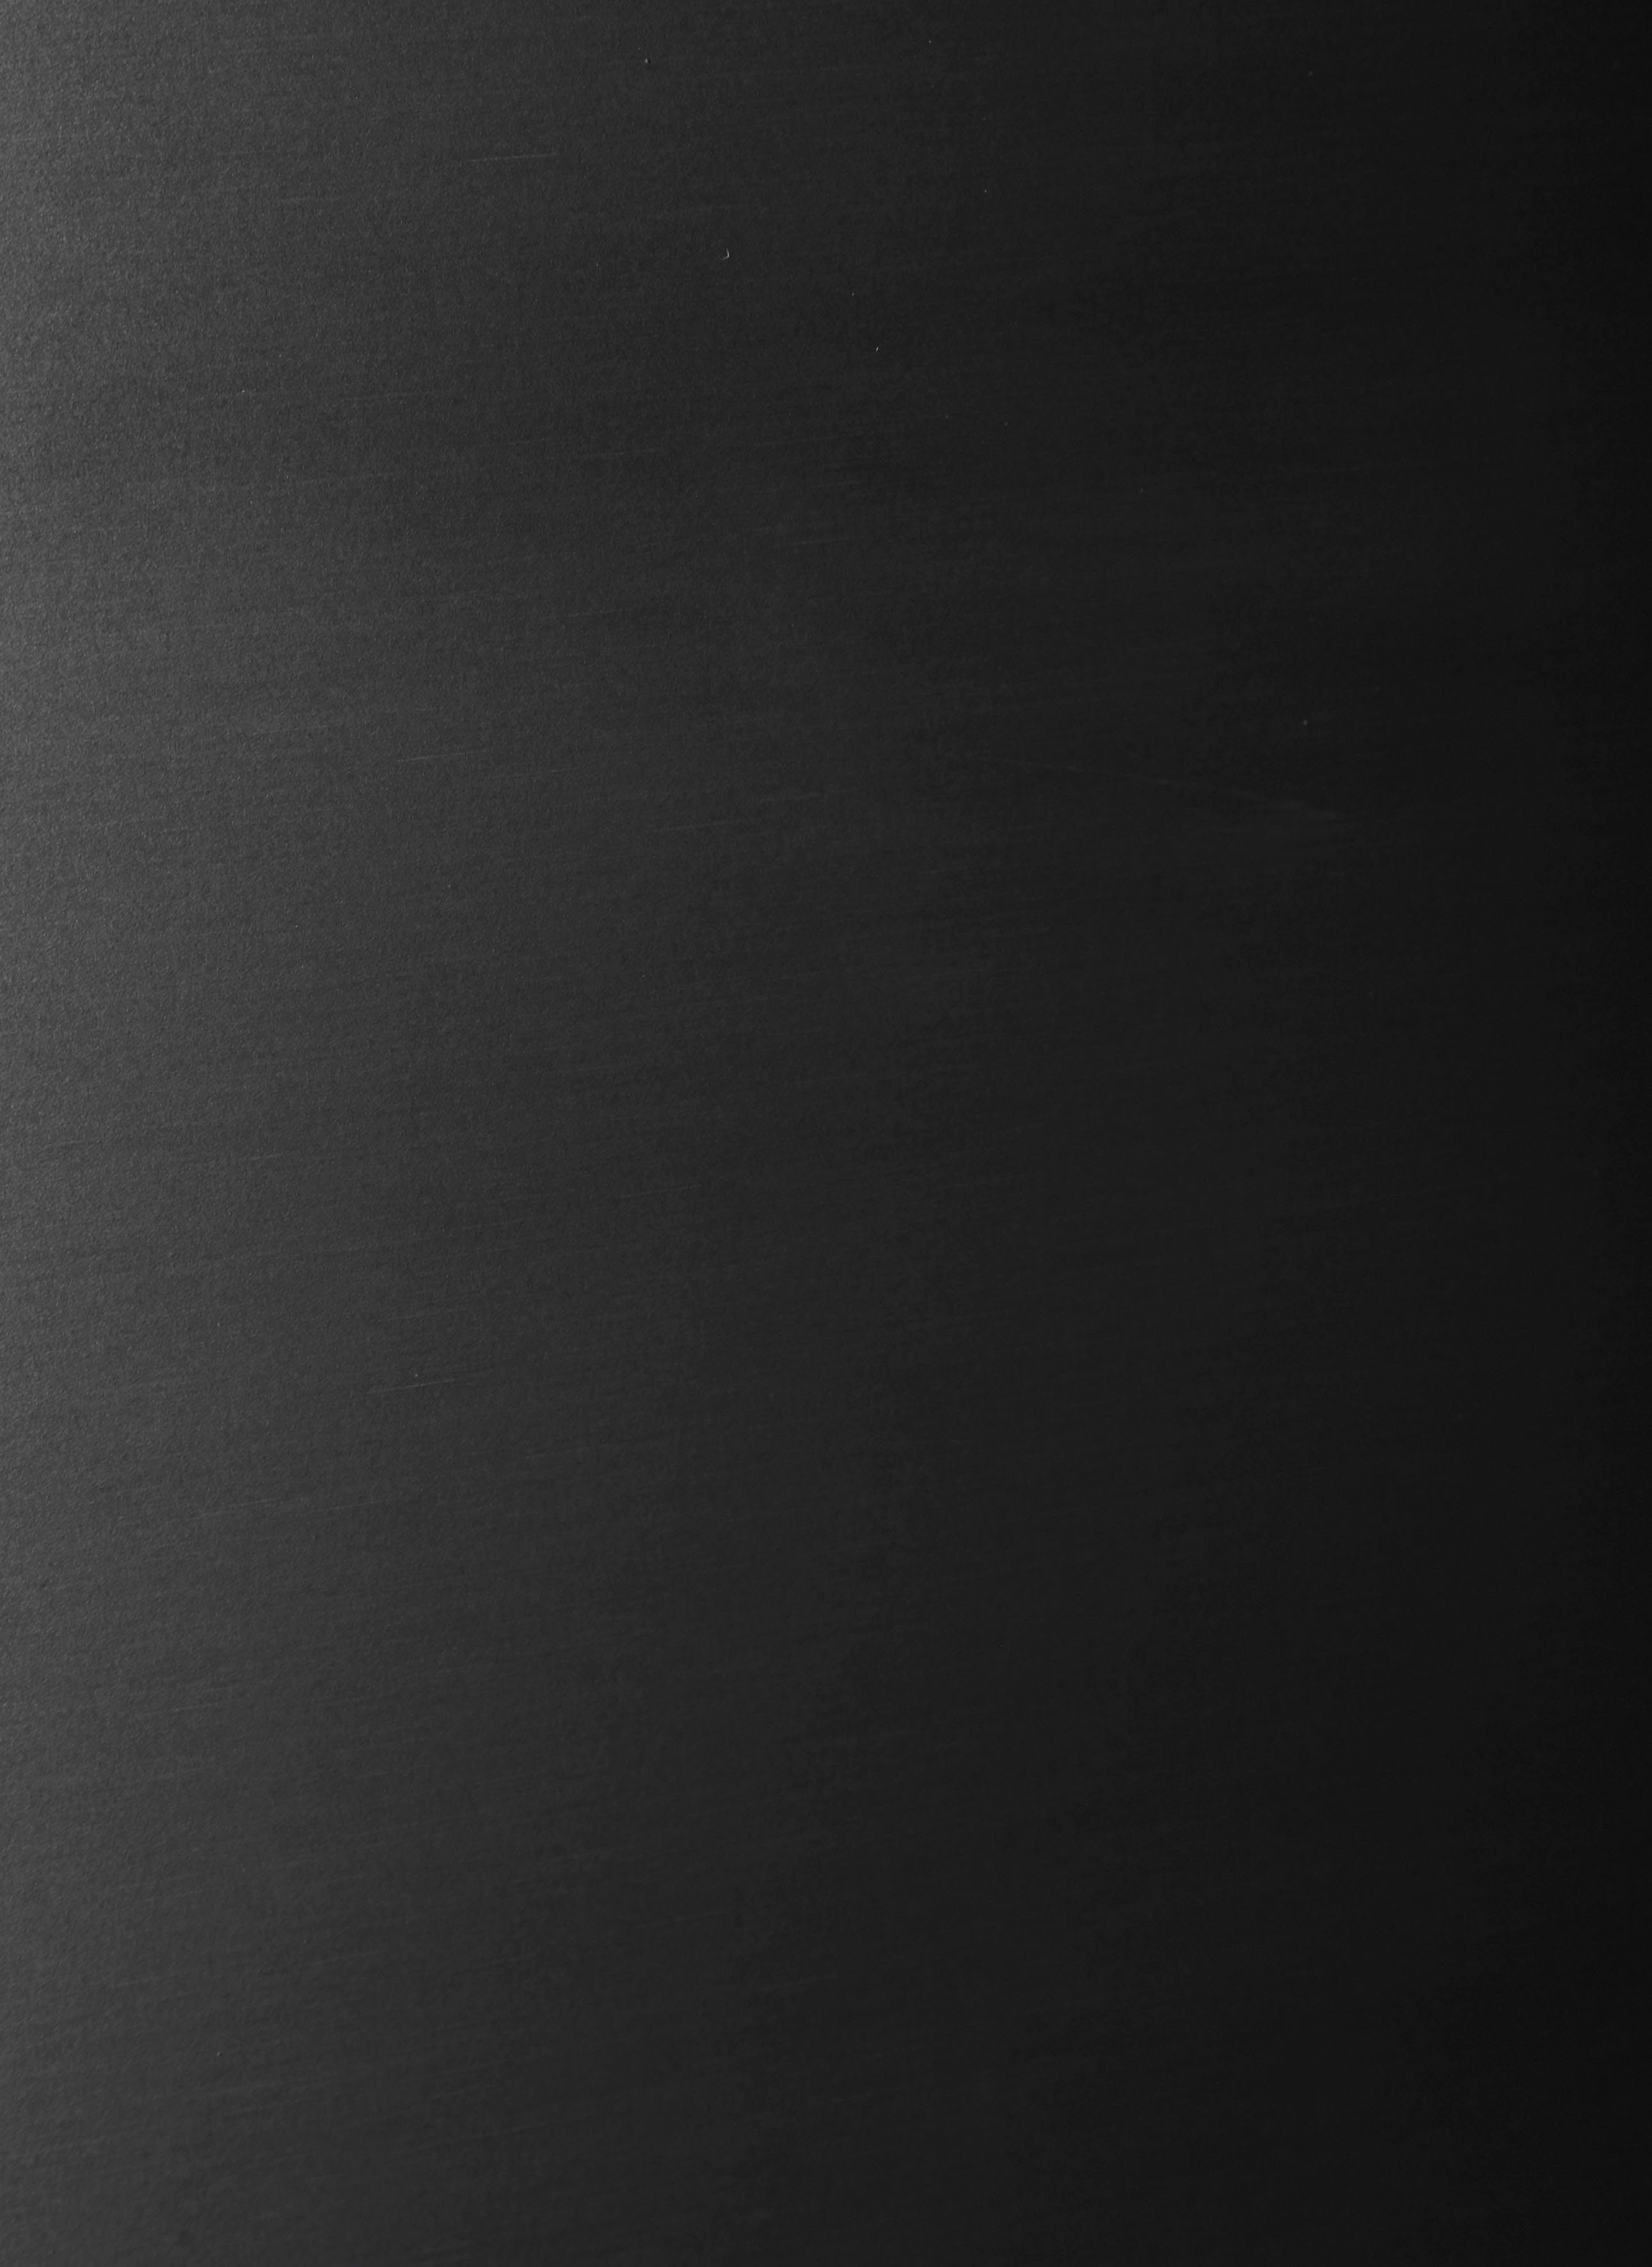 Amica Kühl-/Gefrierkombination DT cm 144 cm 160 374 Edelstahl hoch, breit S, 54 schwarzes